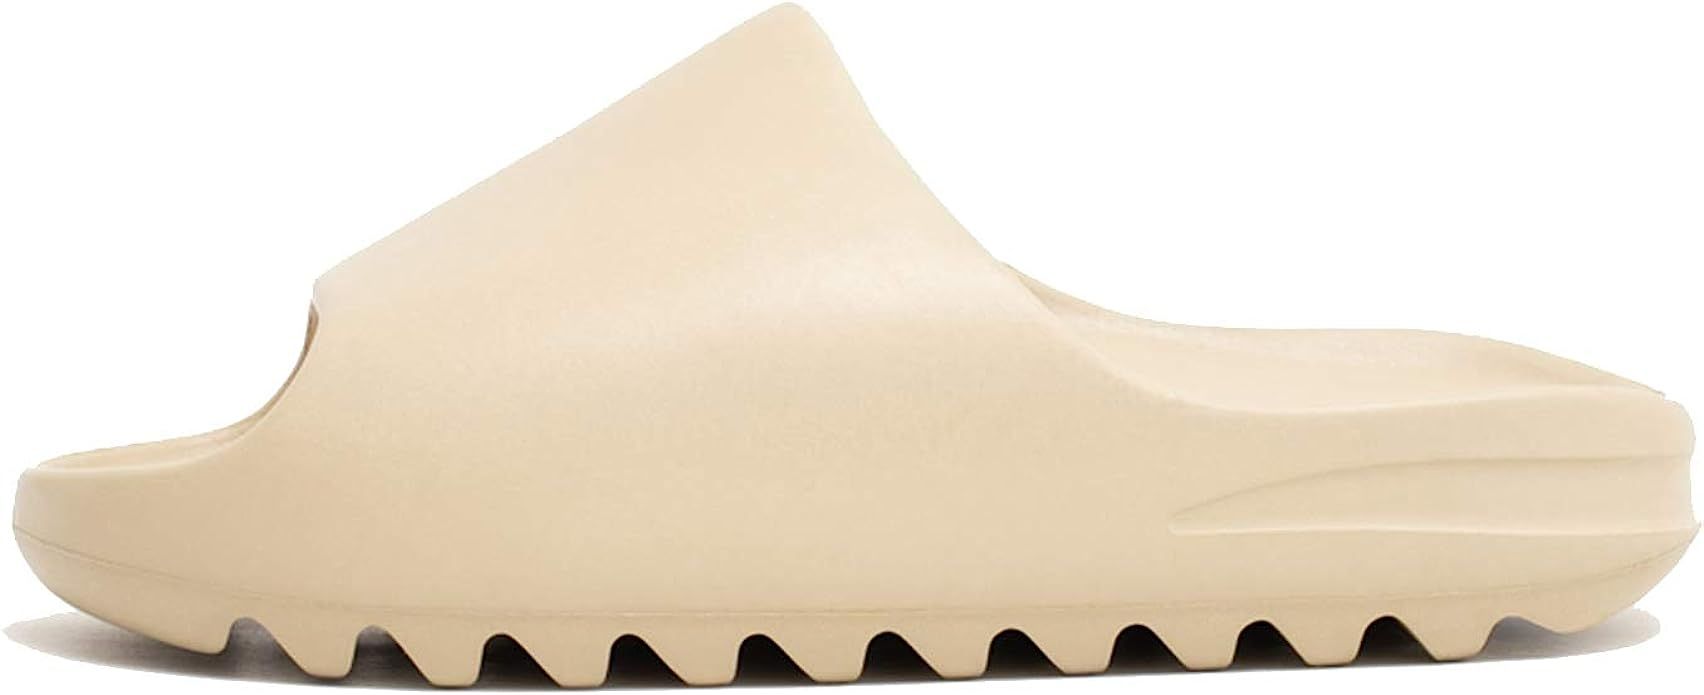 Unisex Slide Sandal Summer Slippers Non-slip Soft Pool Slides, Slides Shoes for Mens/Womens/Teena... | Amazon (US)